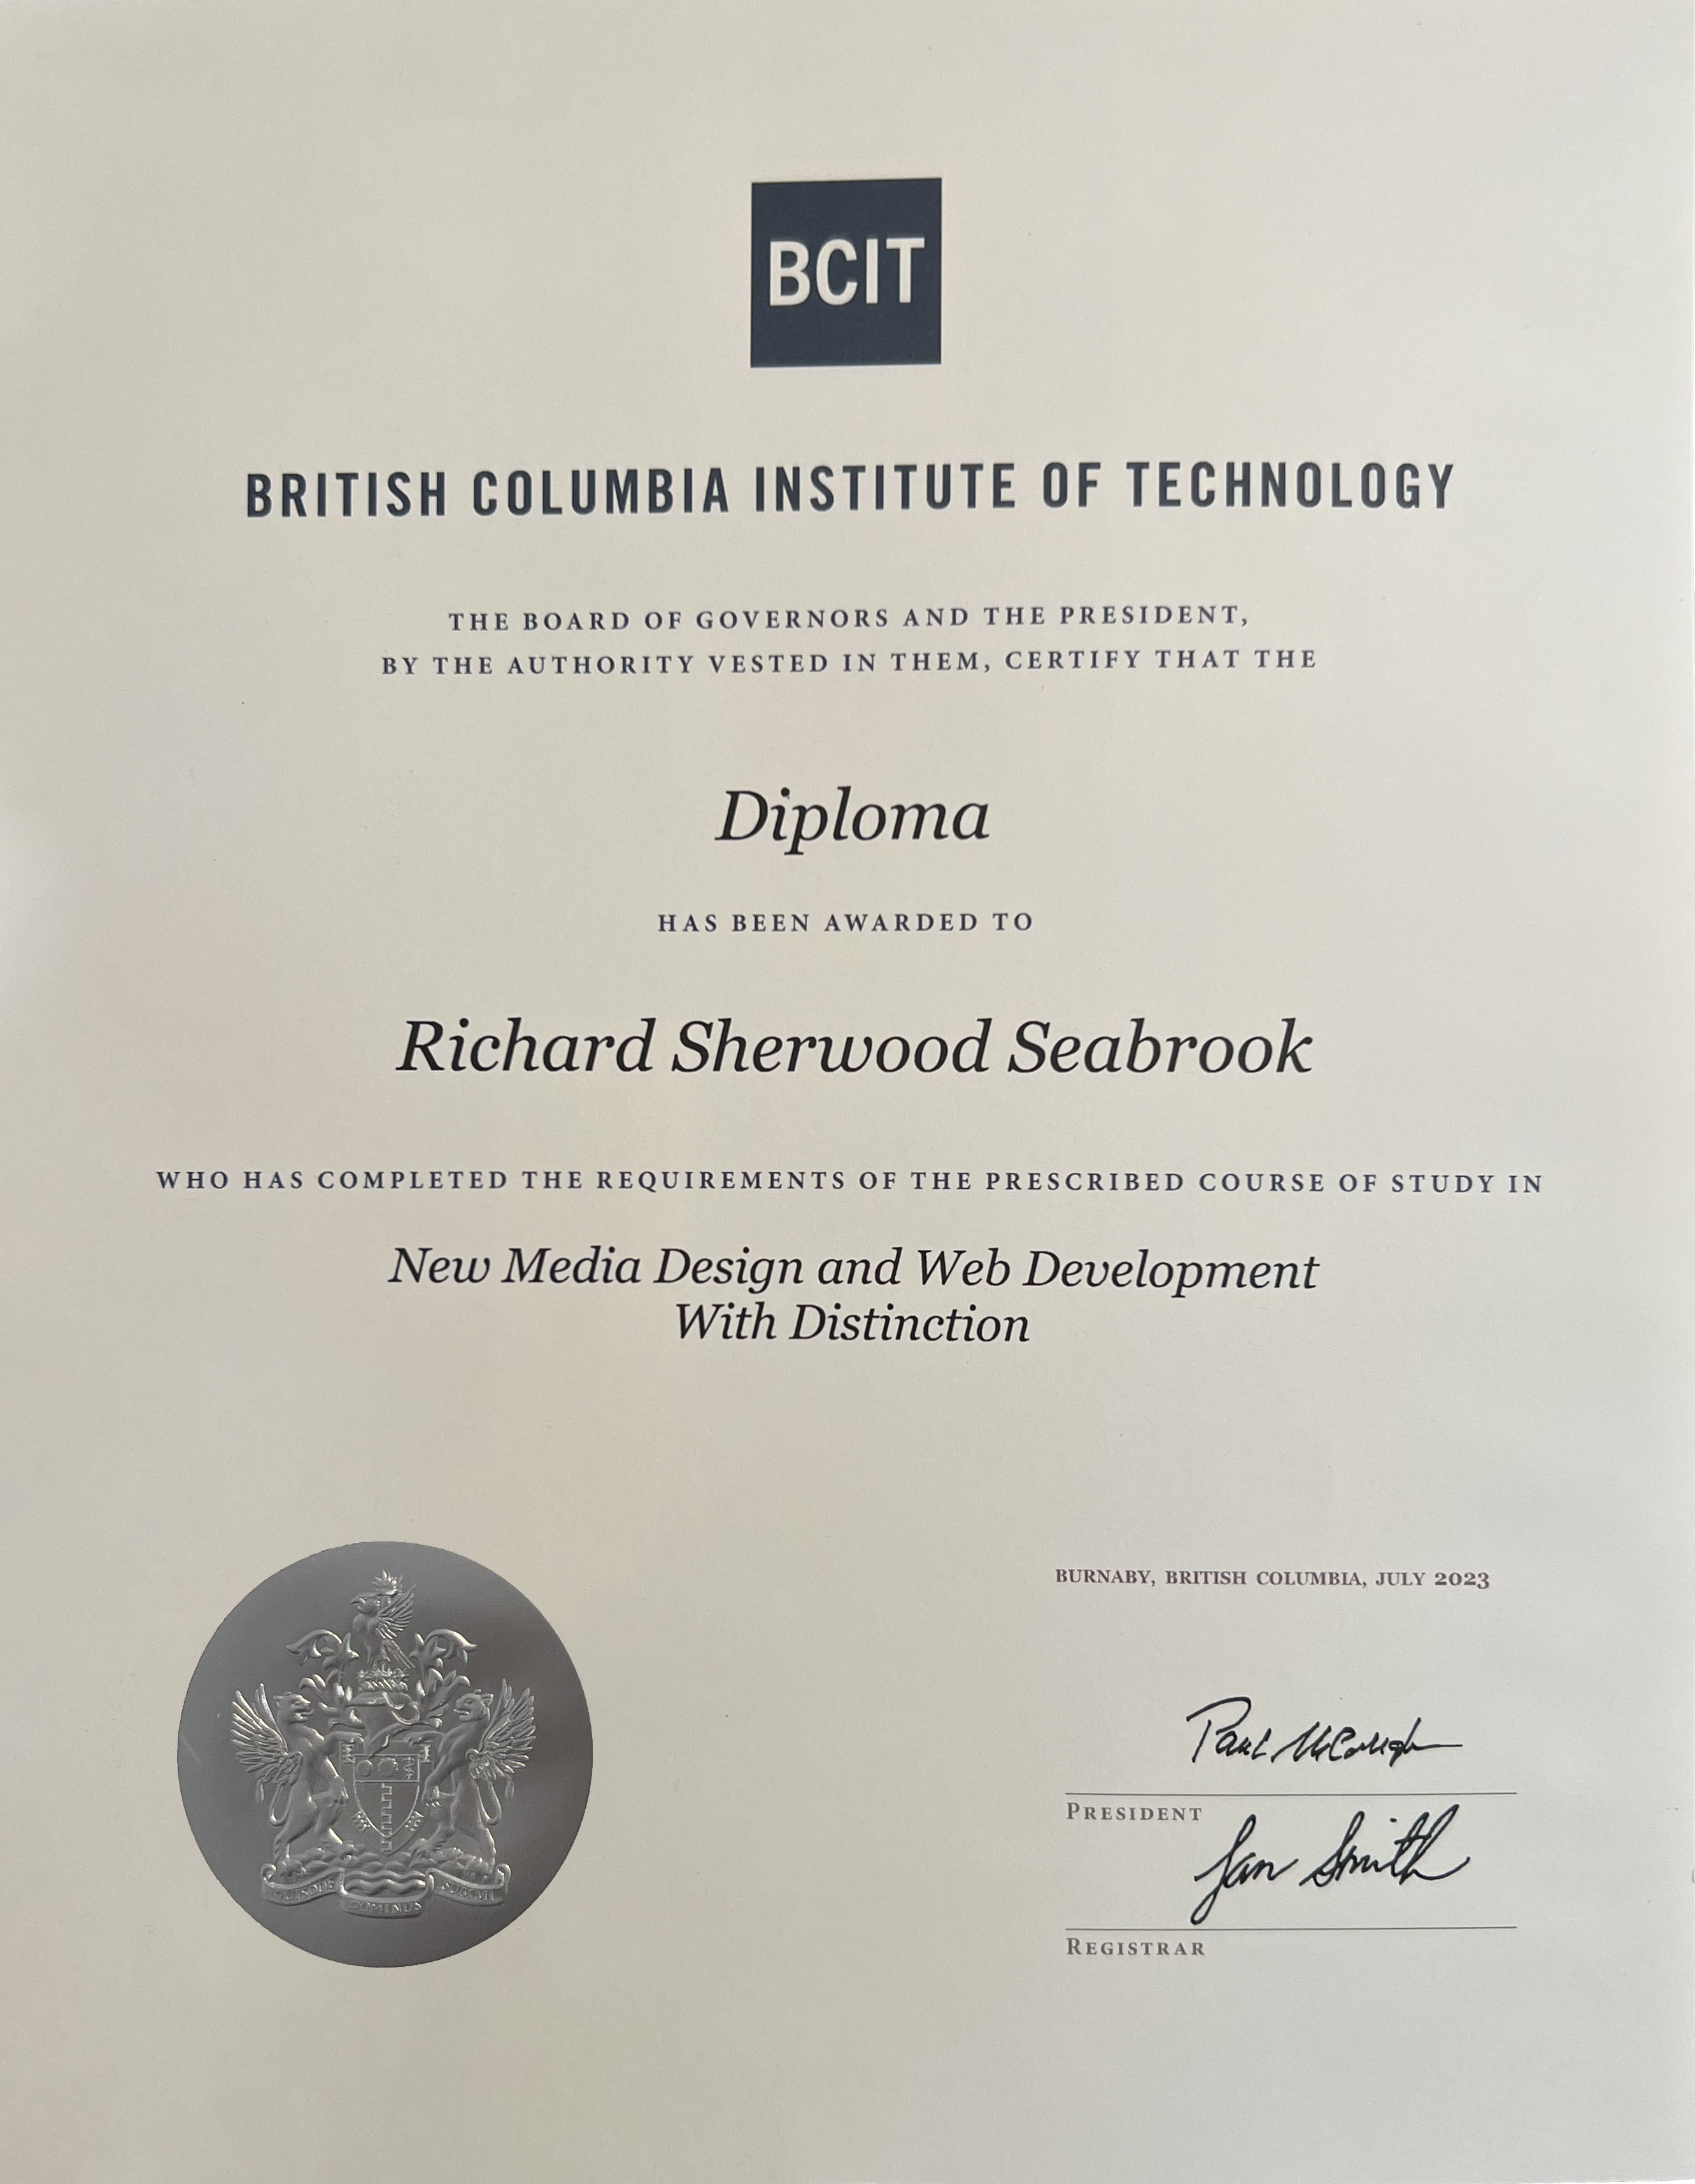 My BCIT Diploma